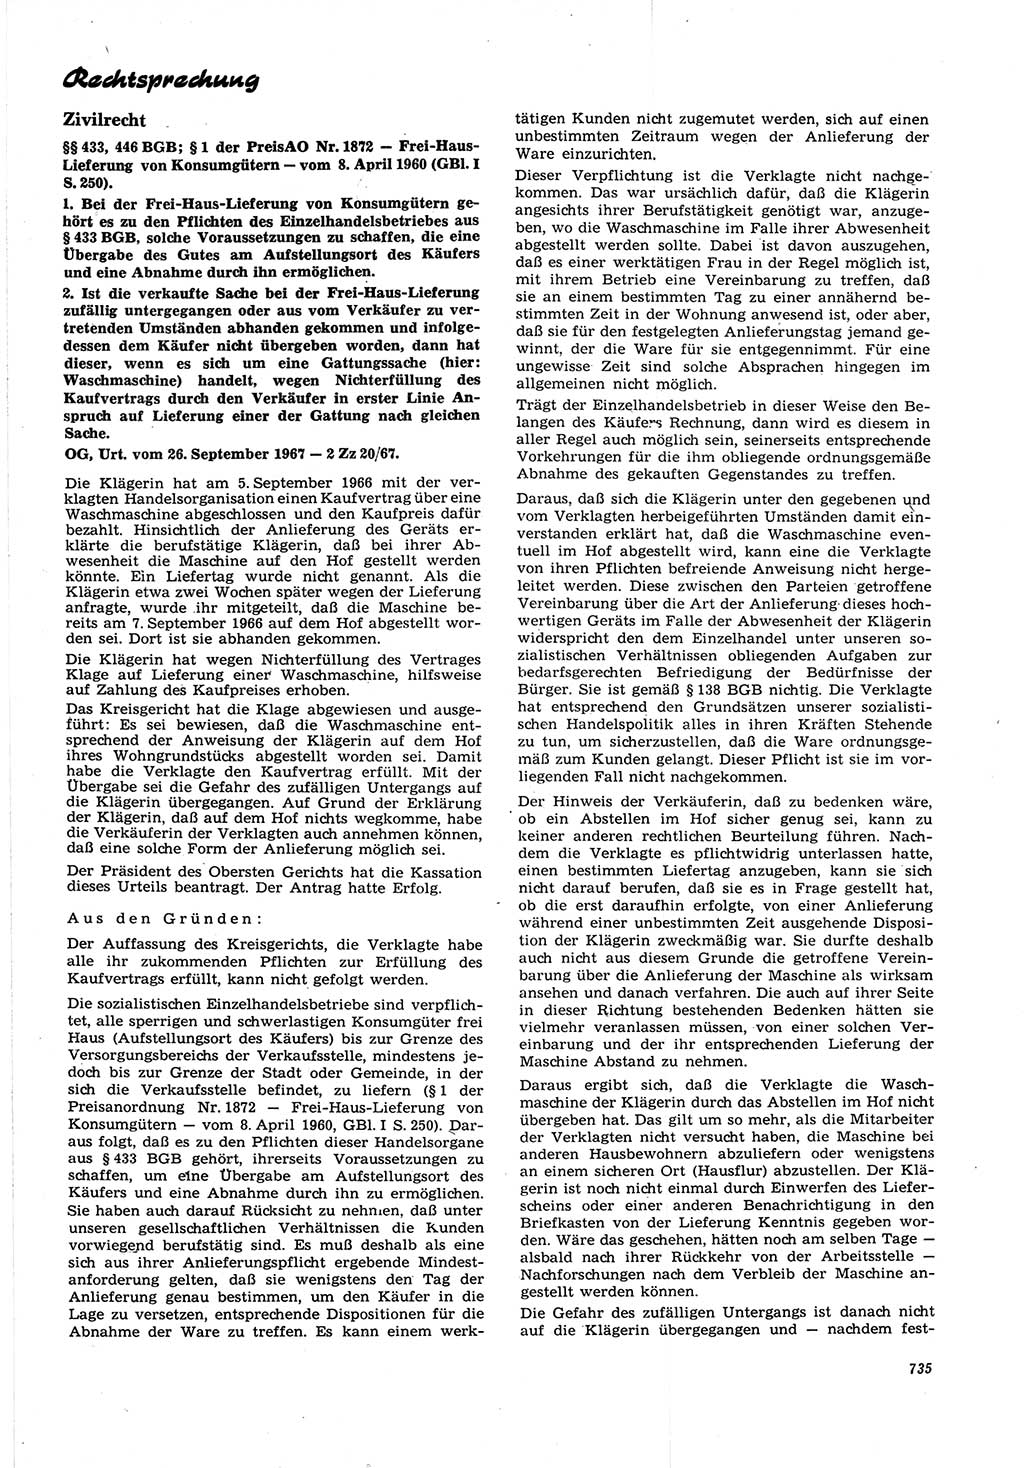 Neue Justiz (NJ), Zeitschrift für Recht und Rechtswissenschaft [Deutsche Demokratische Republik (DDR)], 21. Jahrgang 1967, Seite 735 (NJ DDR 1967, S. 735)